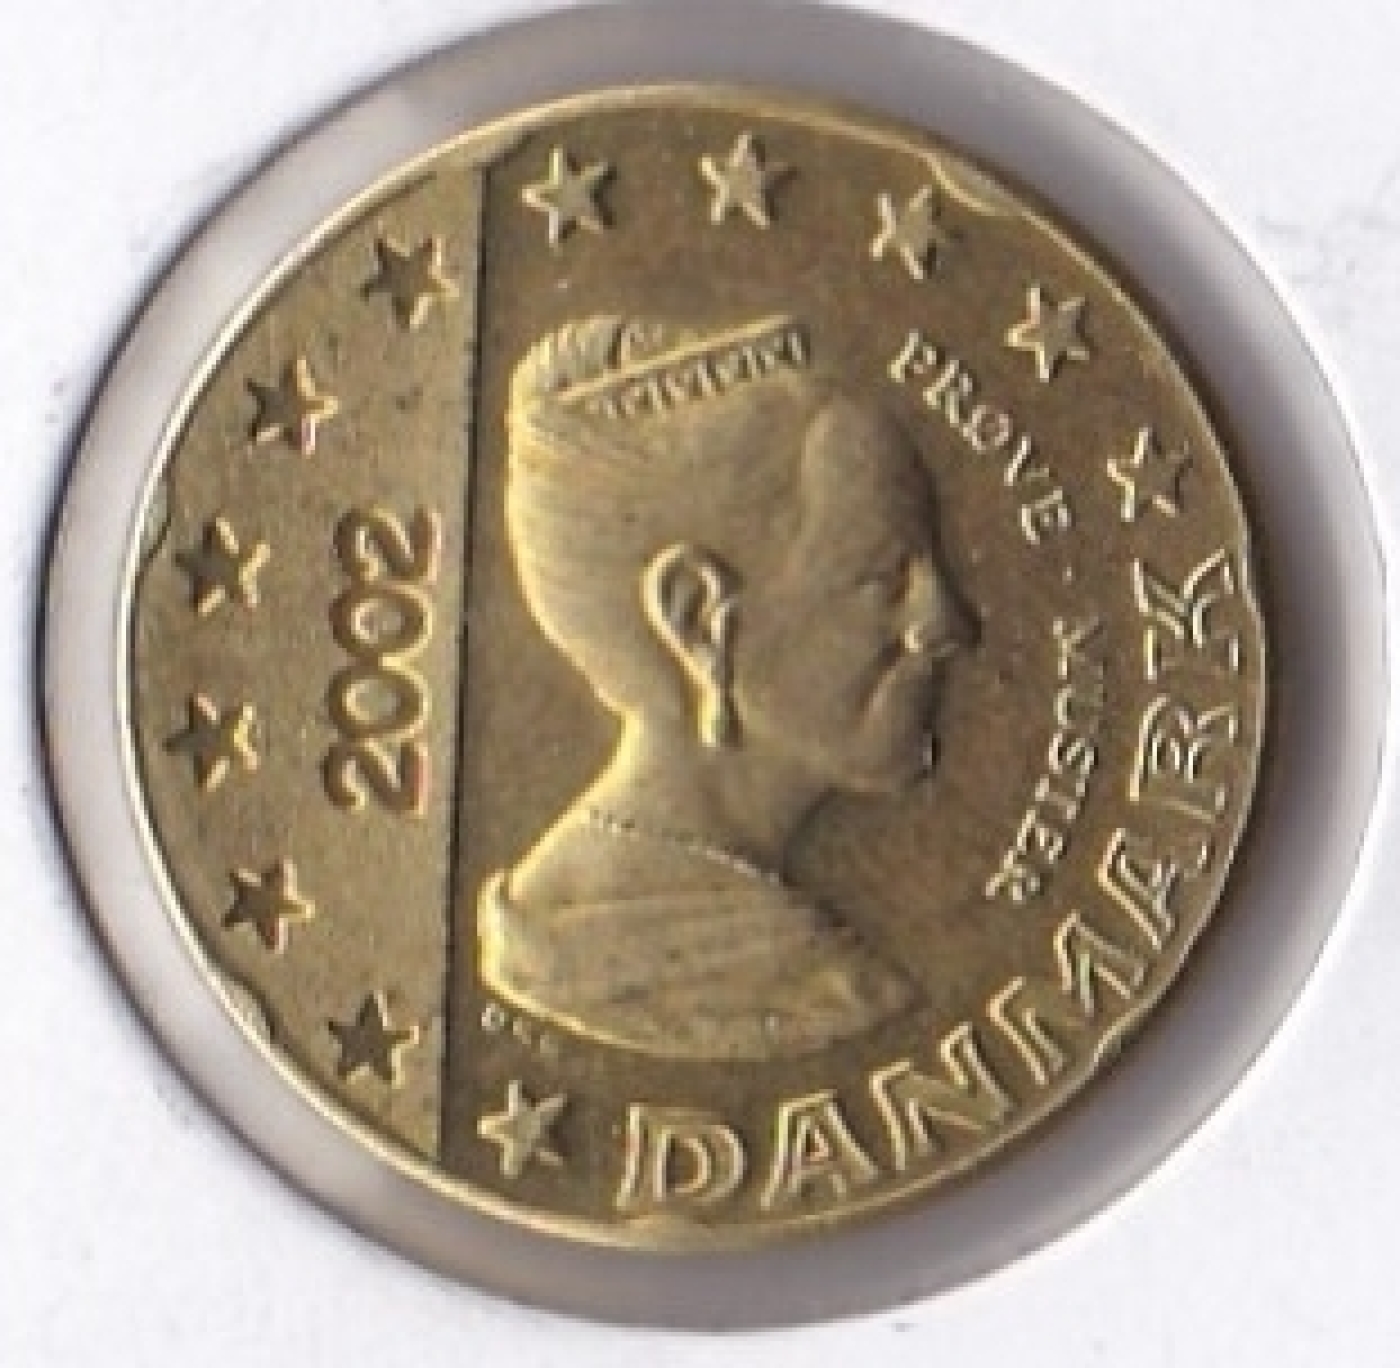 20 euro cent coin 2002